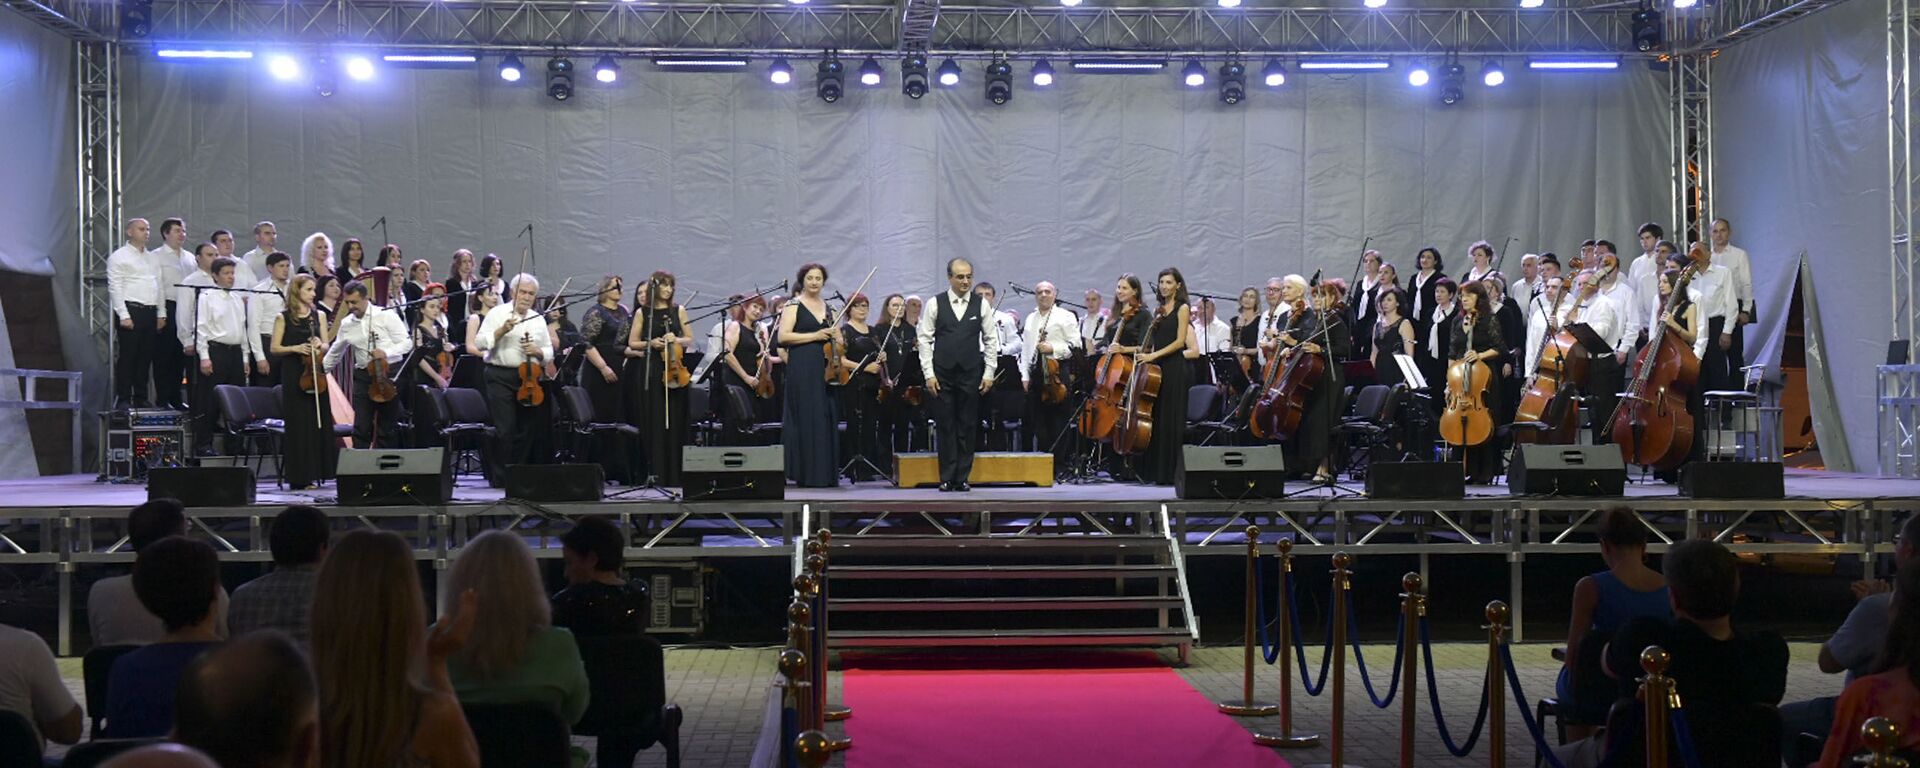 Фестиваль Opera Viva прошел на набережной Сухума  - Sputnik Абхазия, 1920, 09.07.2021